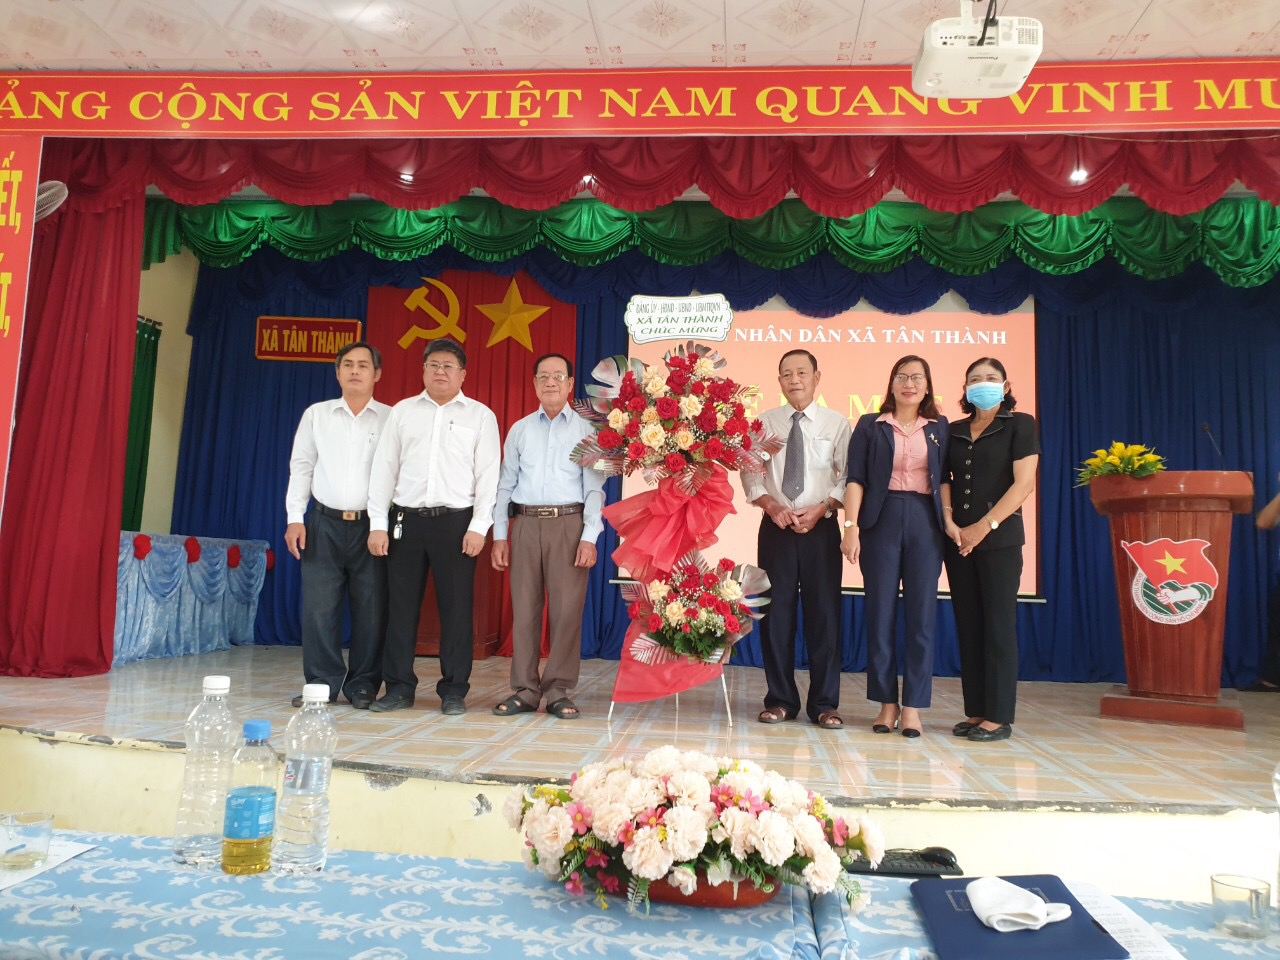 Lãnh đạo hội NCT thành phố Đồng Xoài và lãnh đạo xã tân thành tặng hoa chúc mừng CLB liên thế hệ ấp 6, xã Tân Thành.